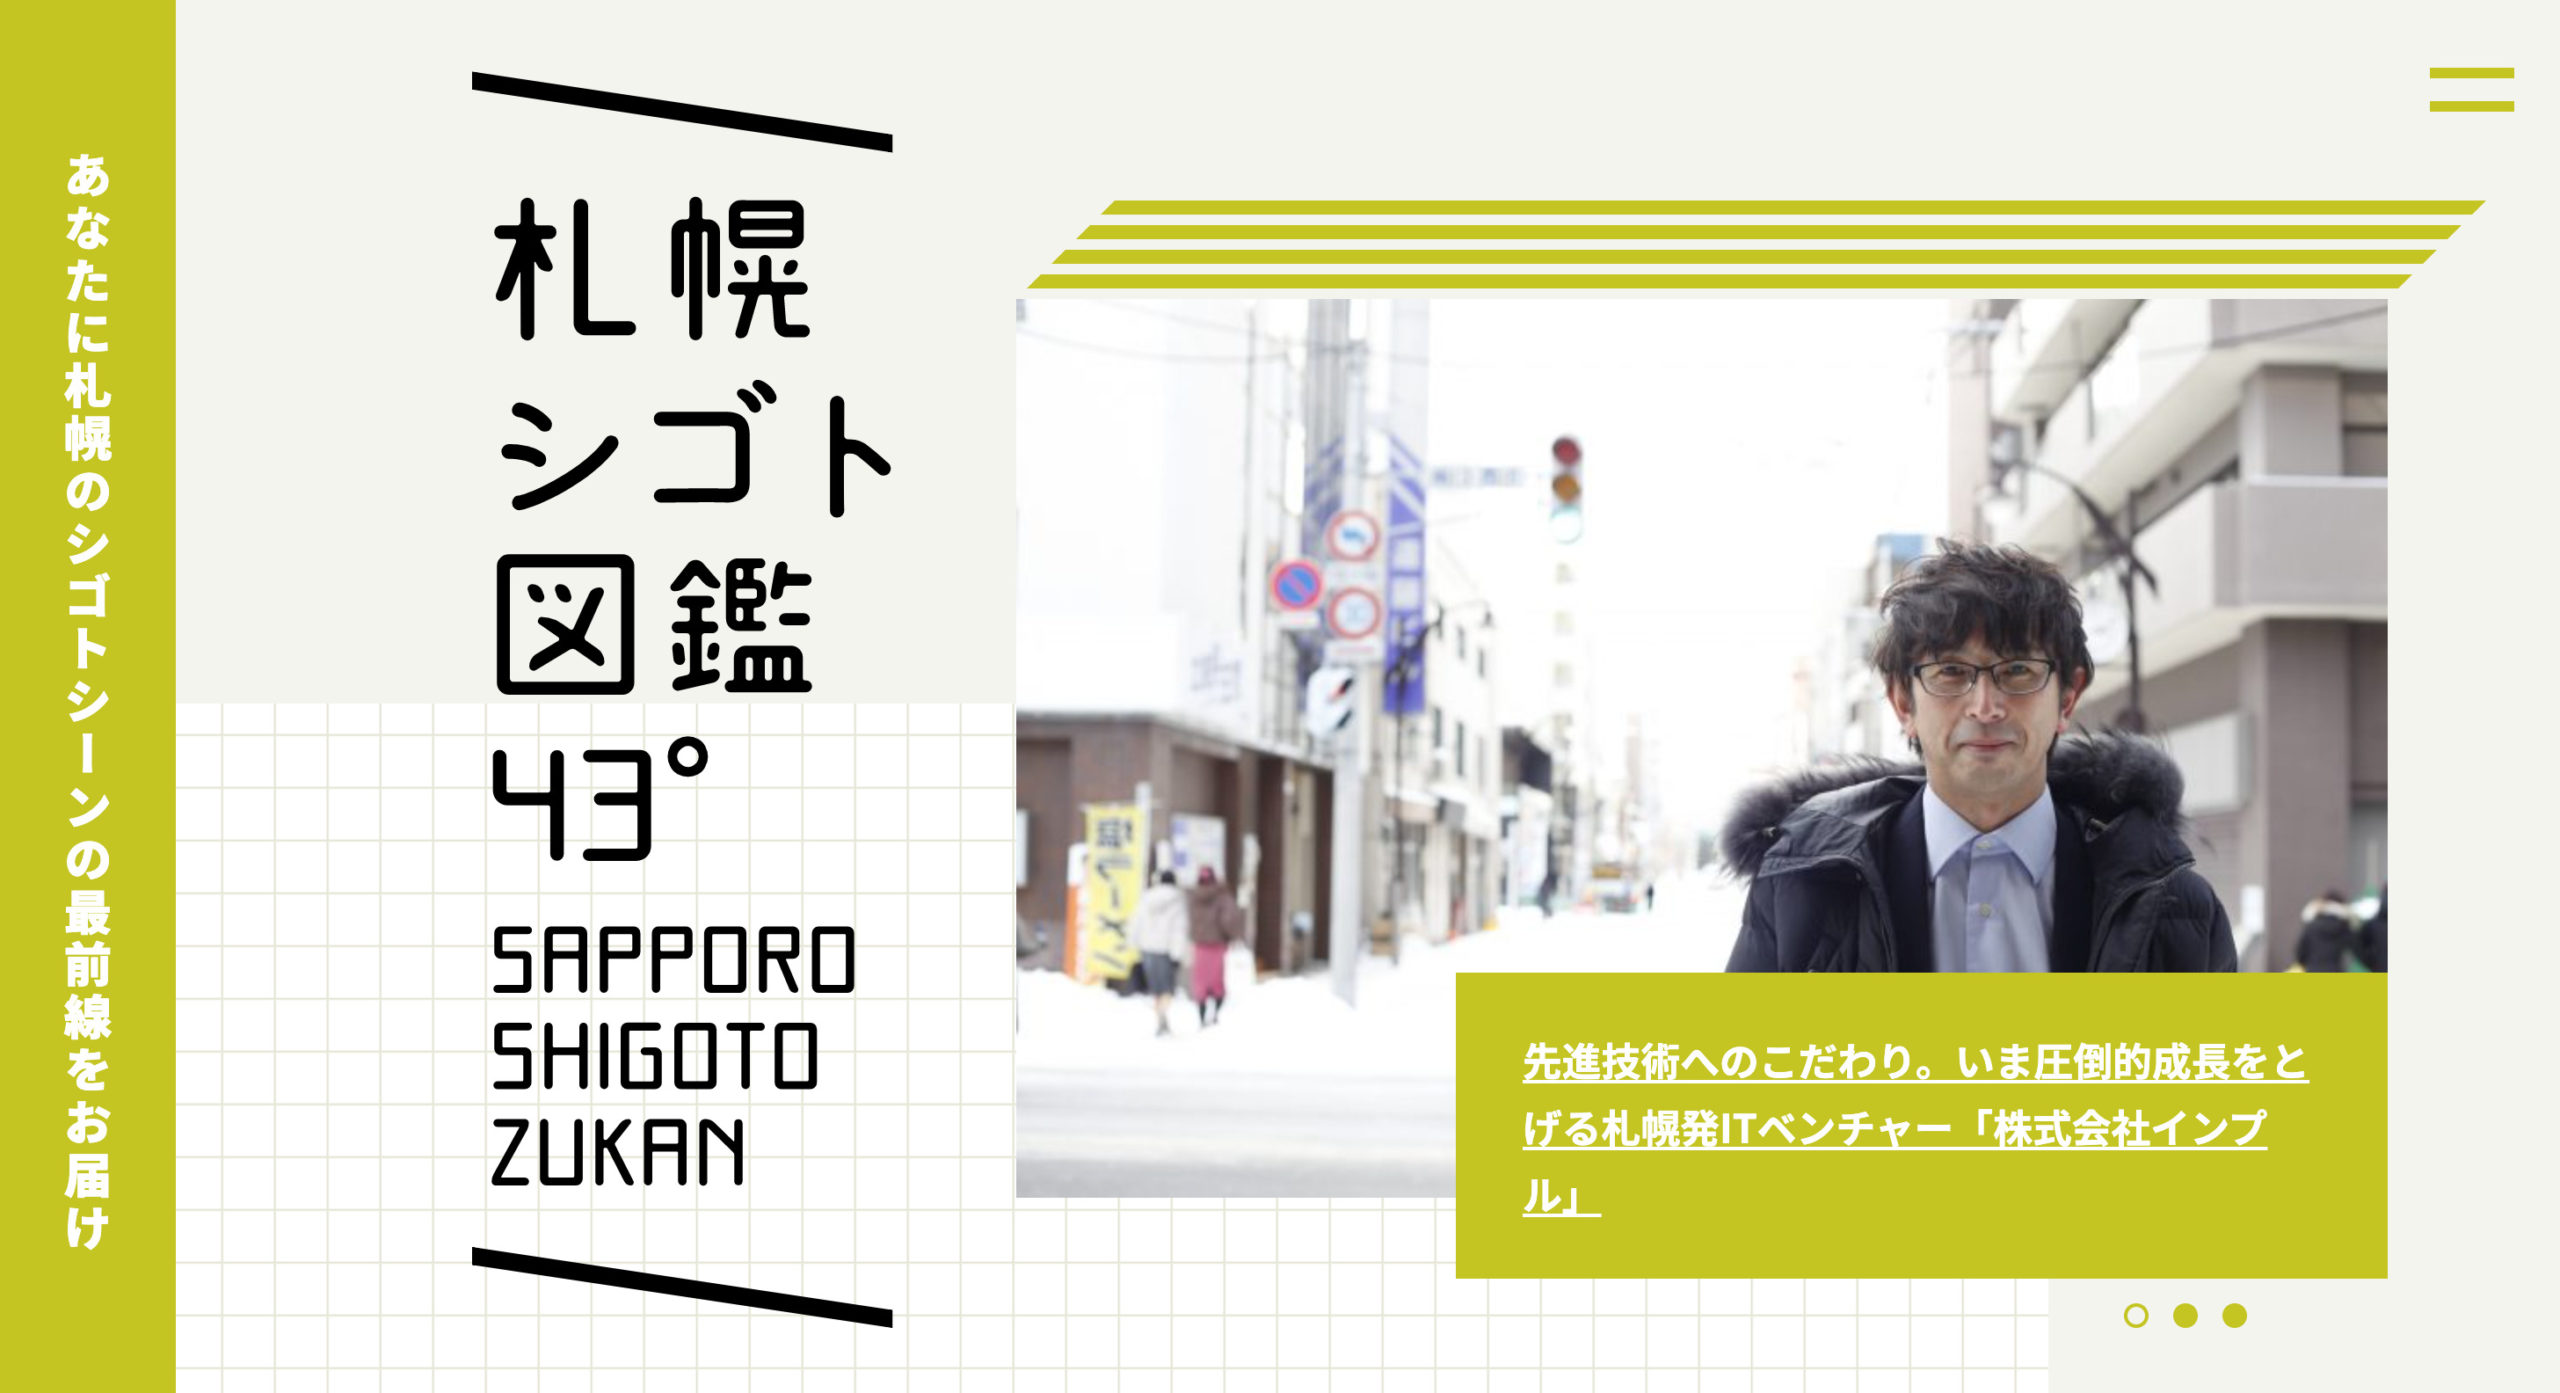 「札幌シゴト図鑑43°」に弊社インタビューが掲載されました。